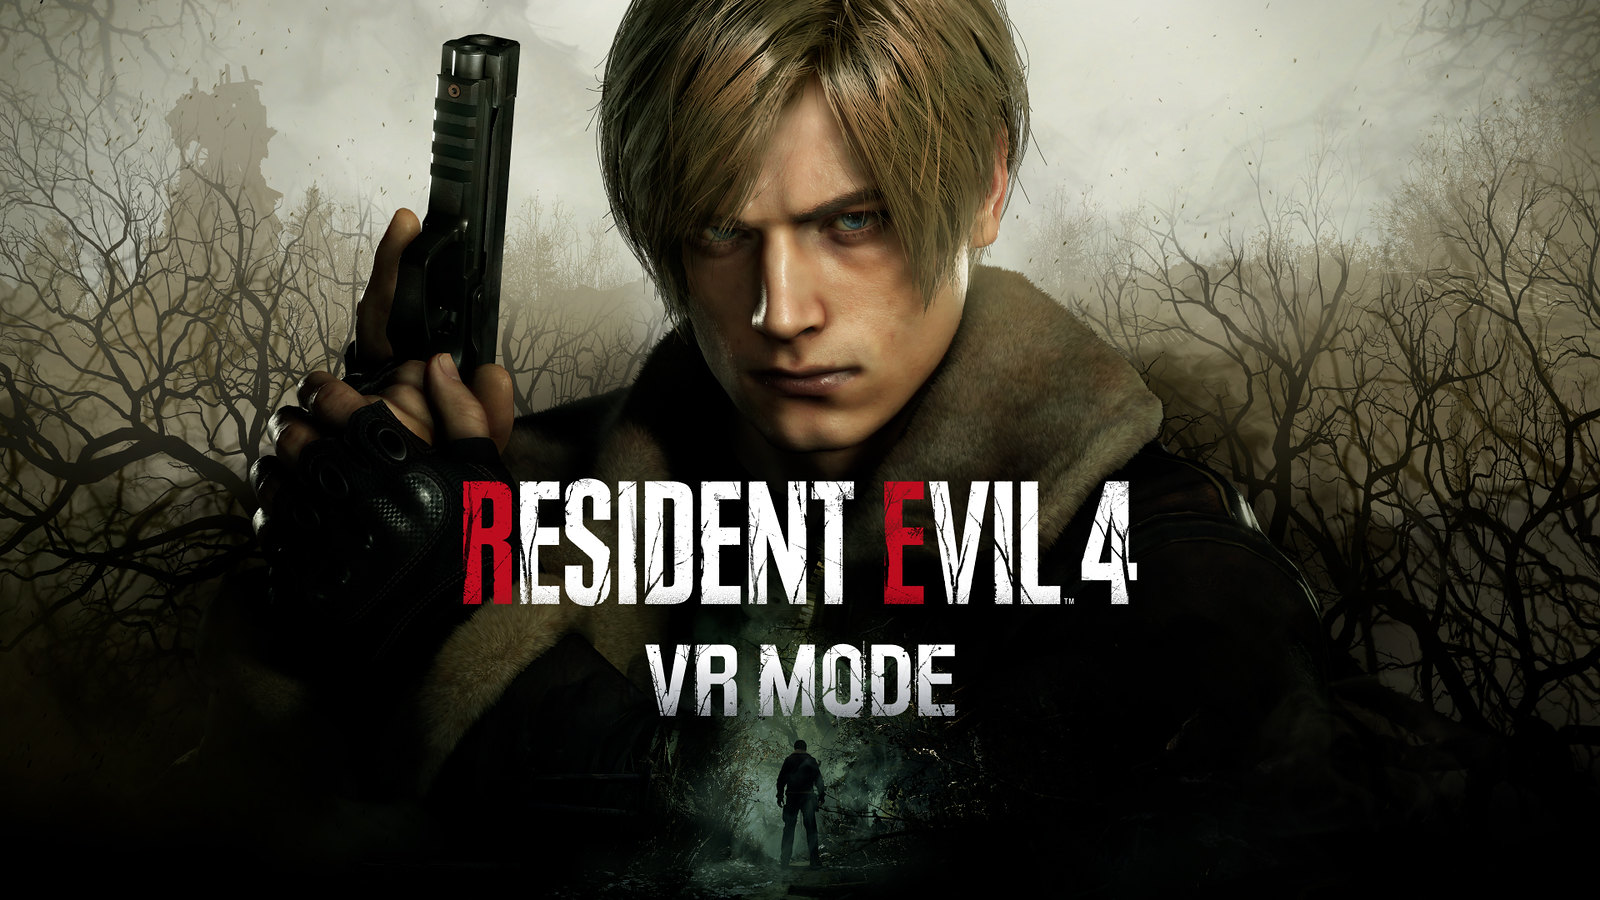 Leon Kennedy est au centre de l'image, faisant face à la caméra et entouré par des bois envoûtants. Le texte à l'écran indique : Resident Evil 4 VR Mode